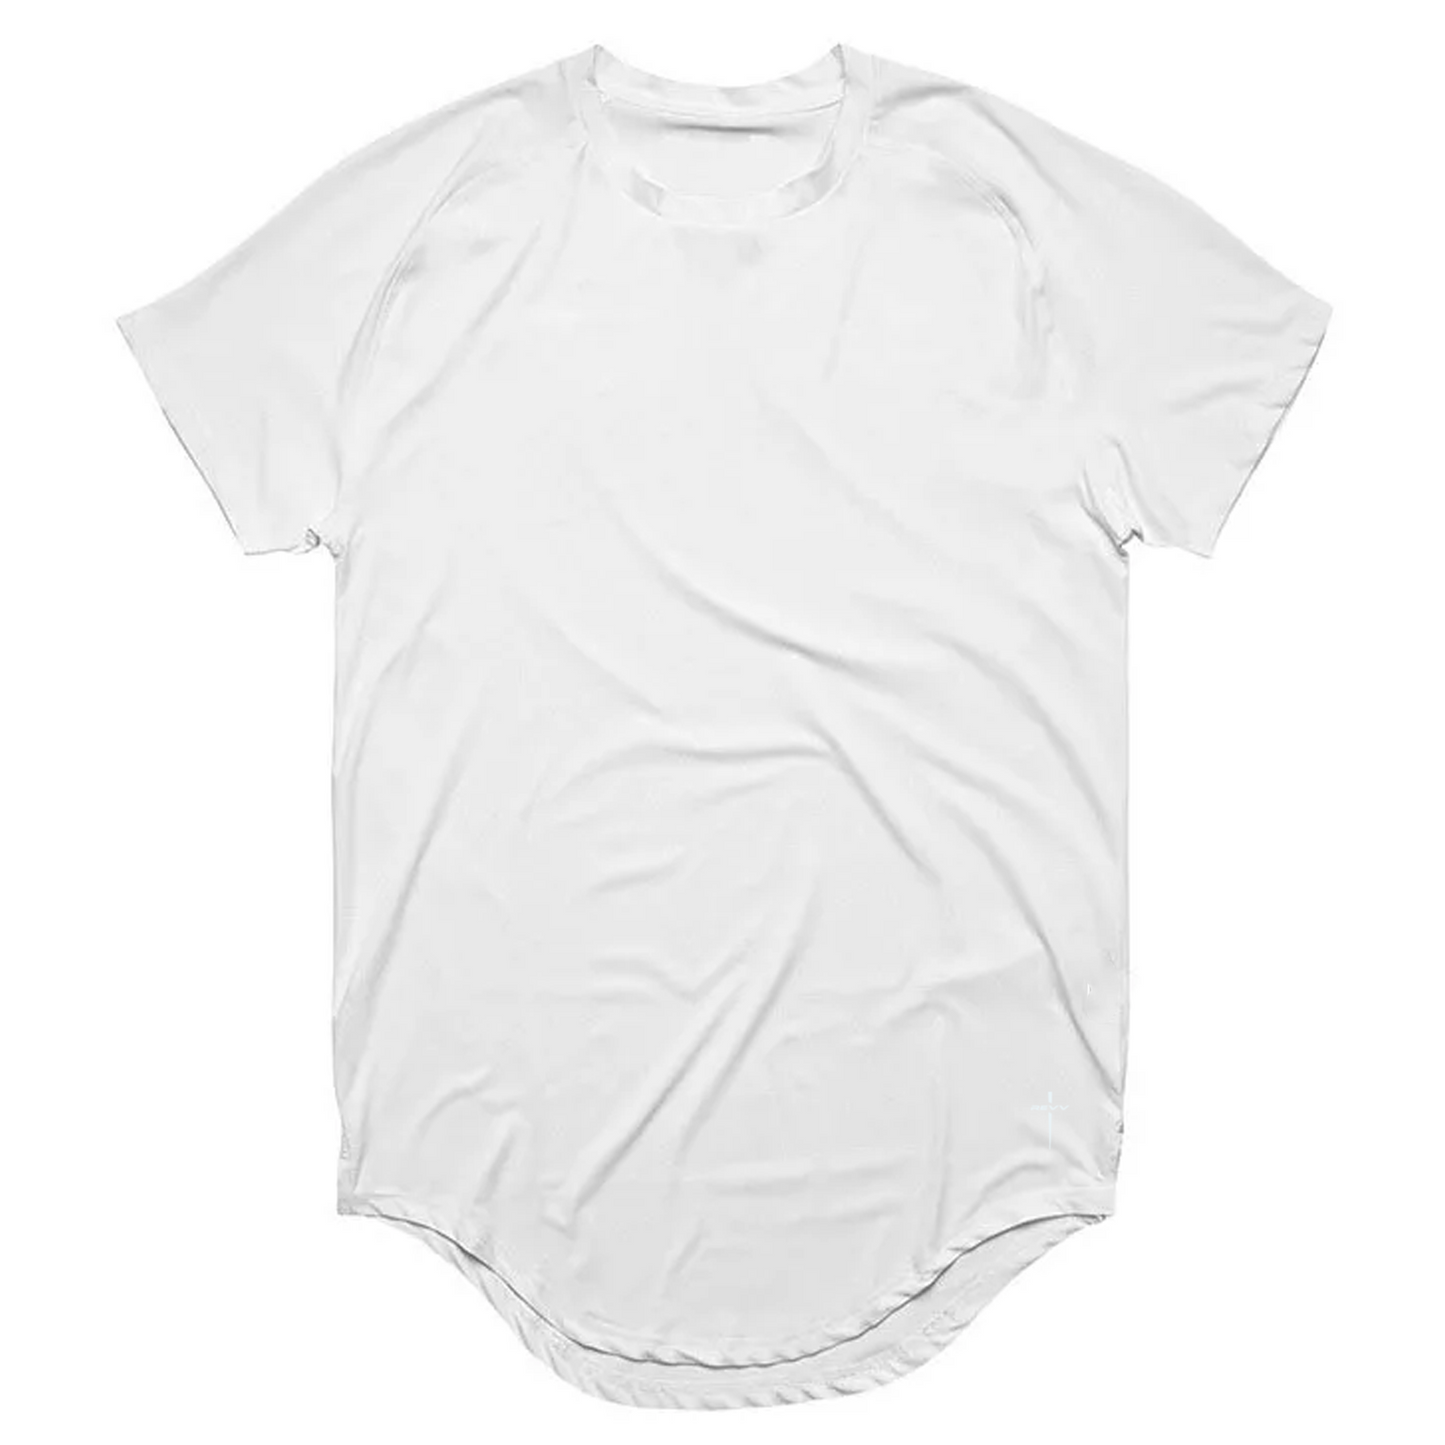 Praise Short Sleeve Shirt-White